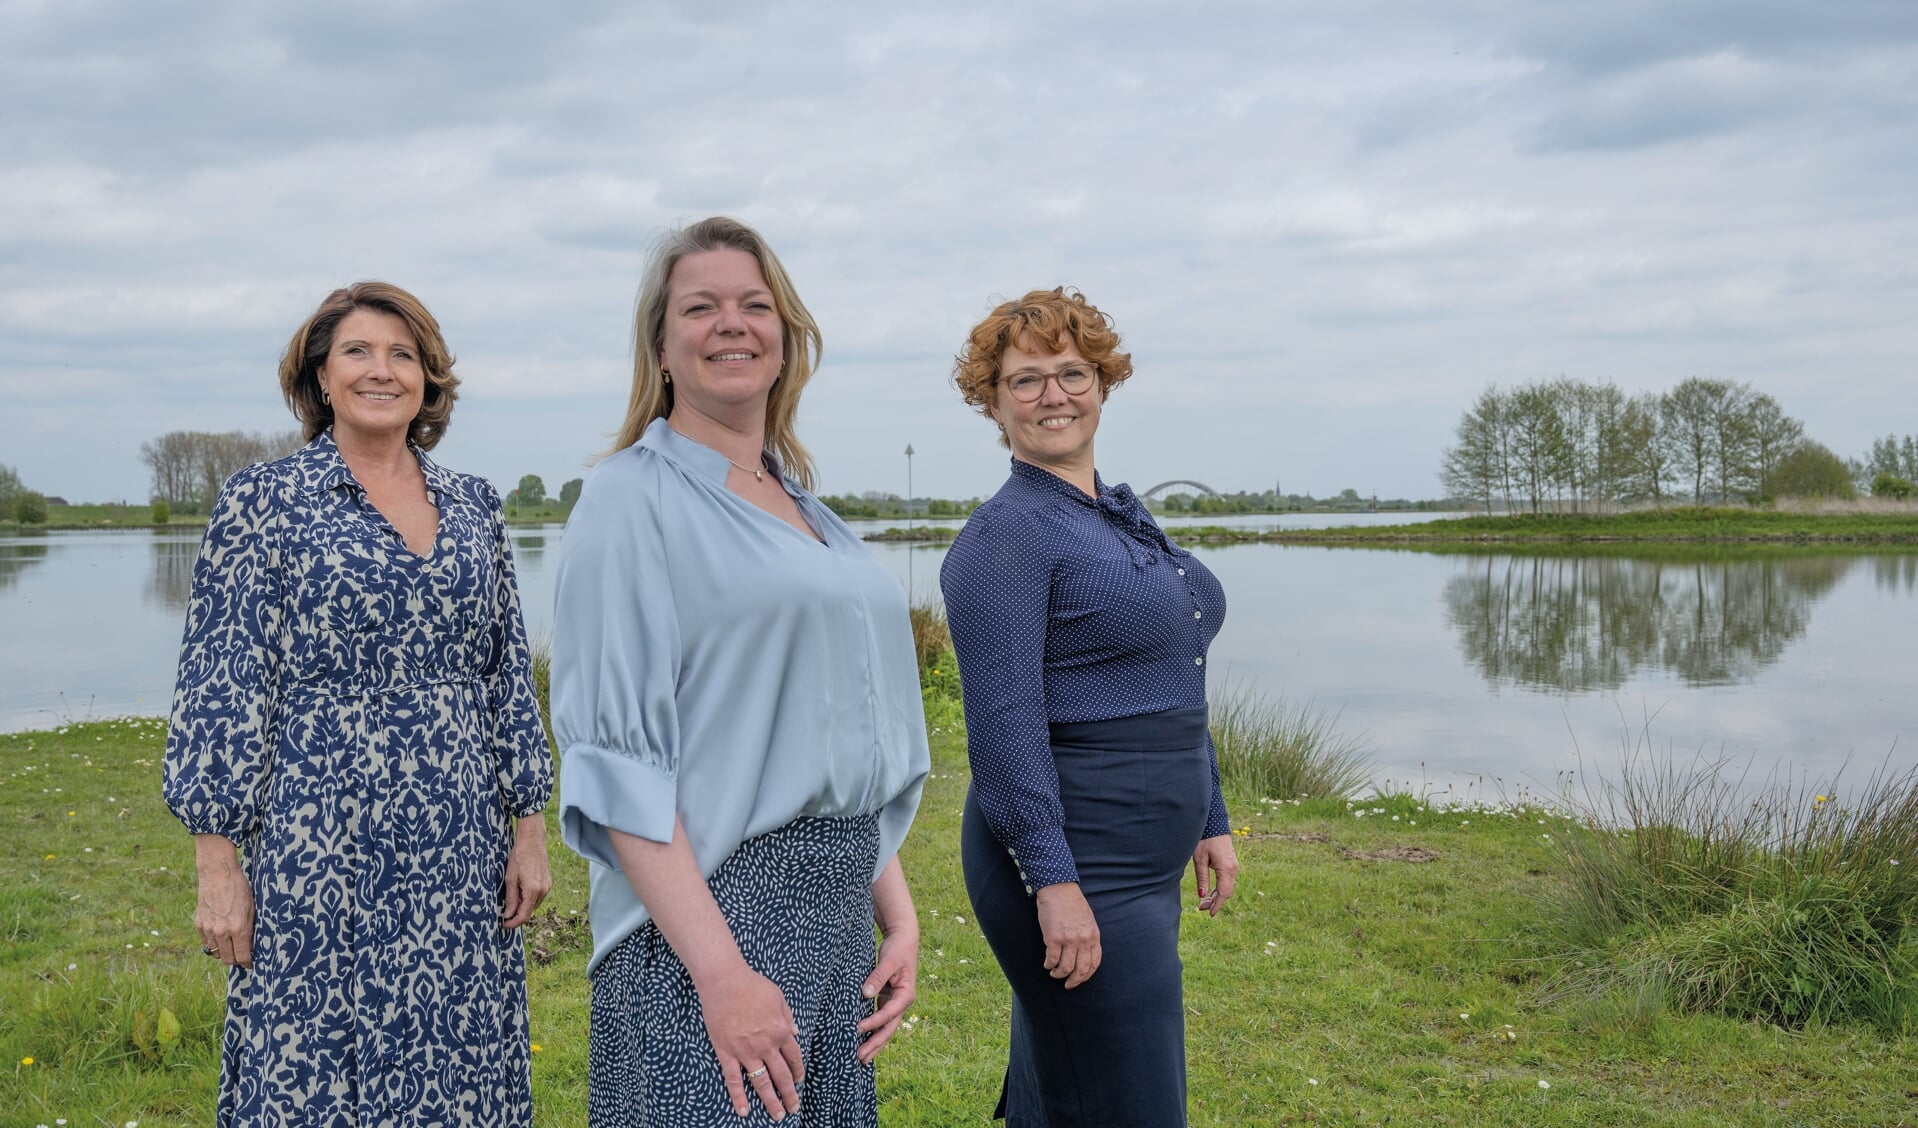 • De drie vrouwelijke wethouders in het college: Monica Wichgers (Culemorg van Nu), Mischa Peters (GroenLinks) en Daphne Dijvoet (D66).